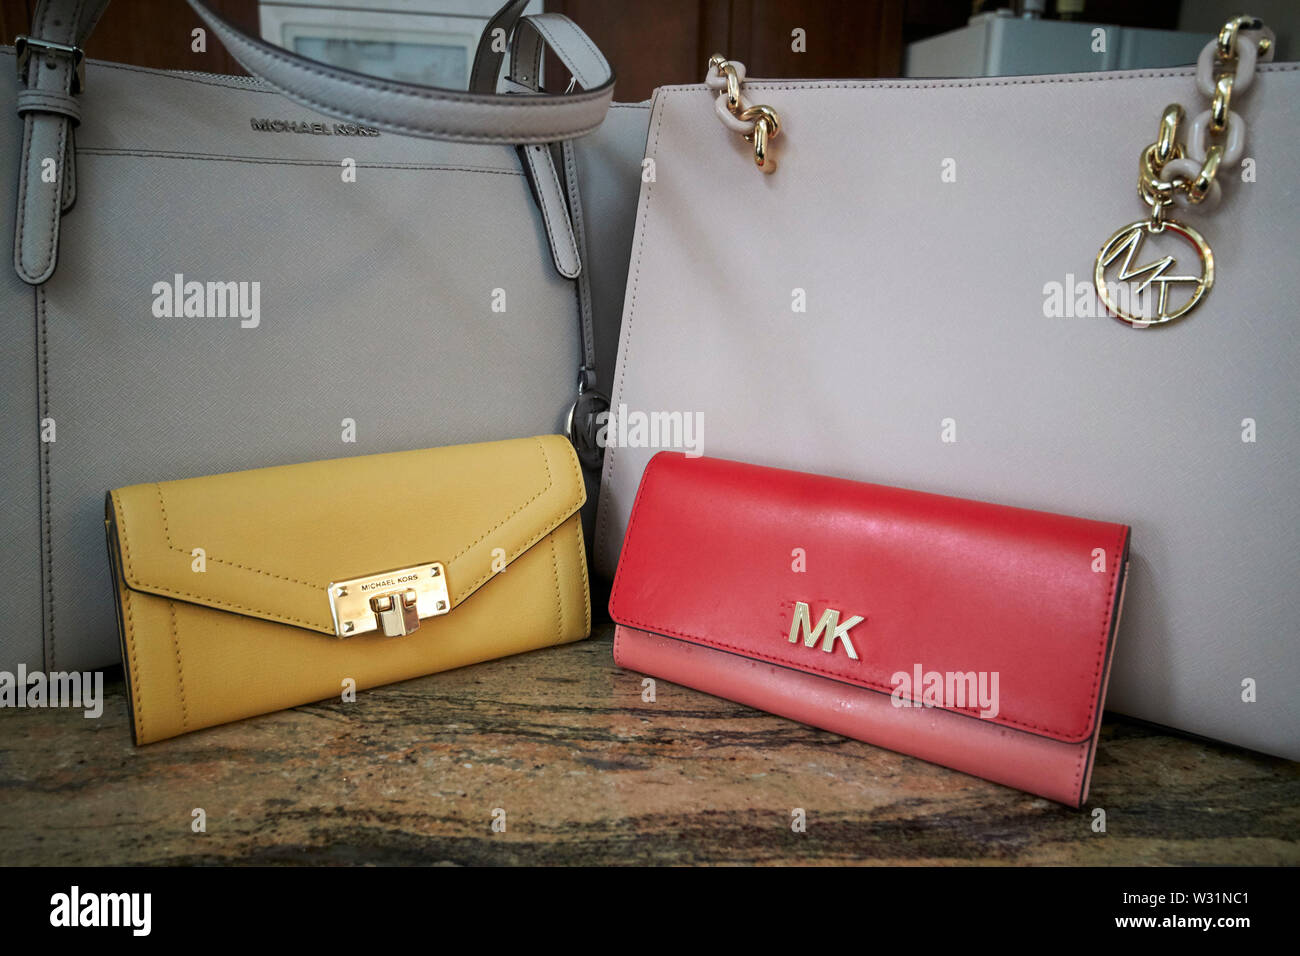 Michael kors handbag immagini e fotografie stock ad alta risoluzione - Alamy